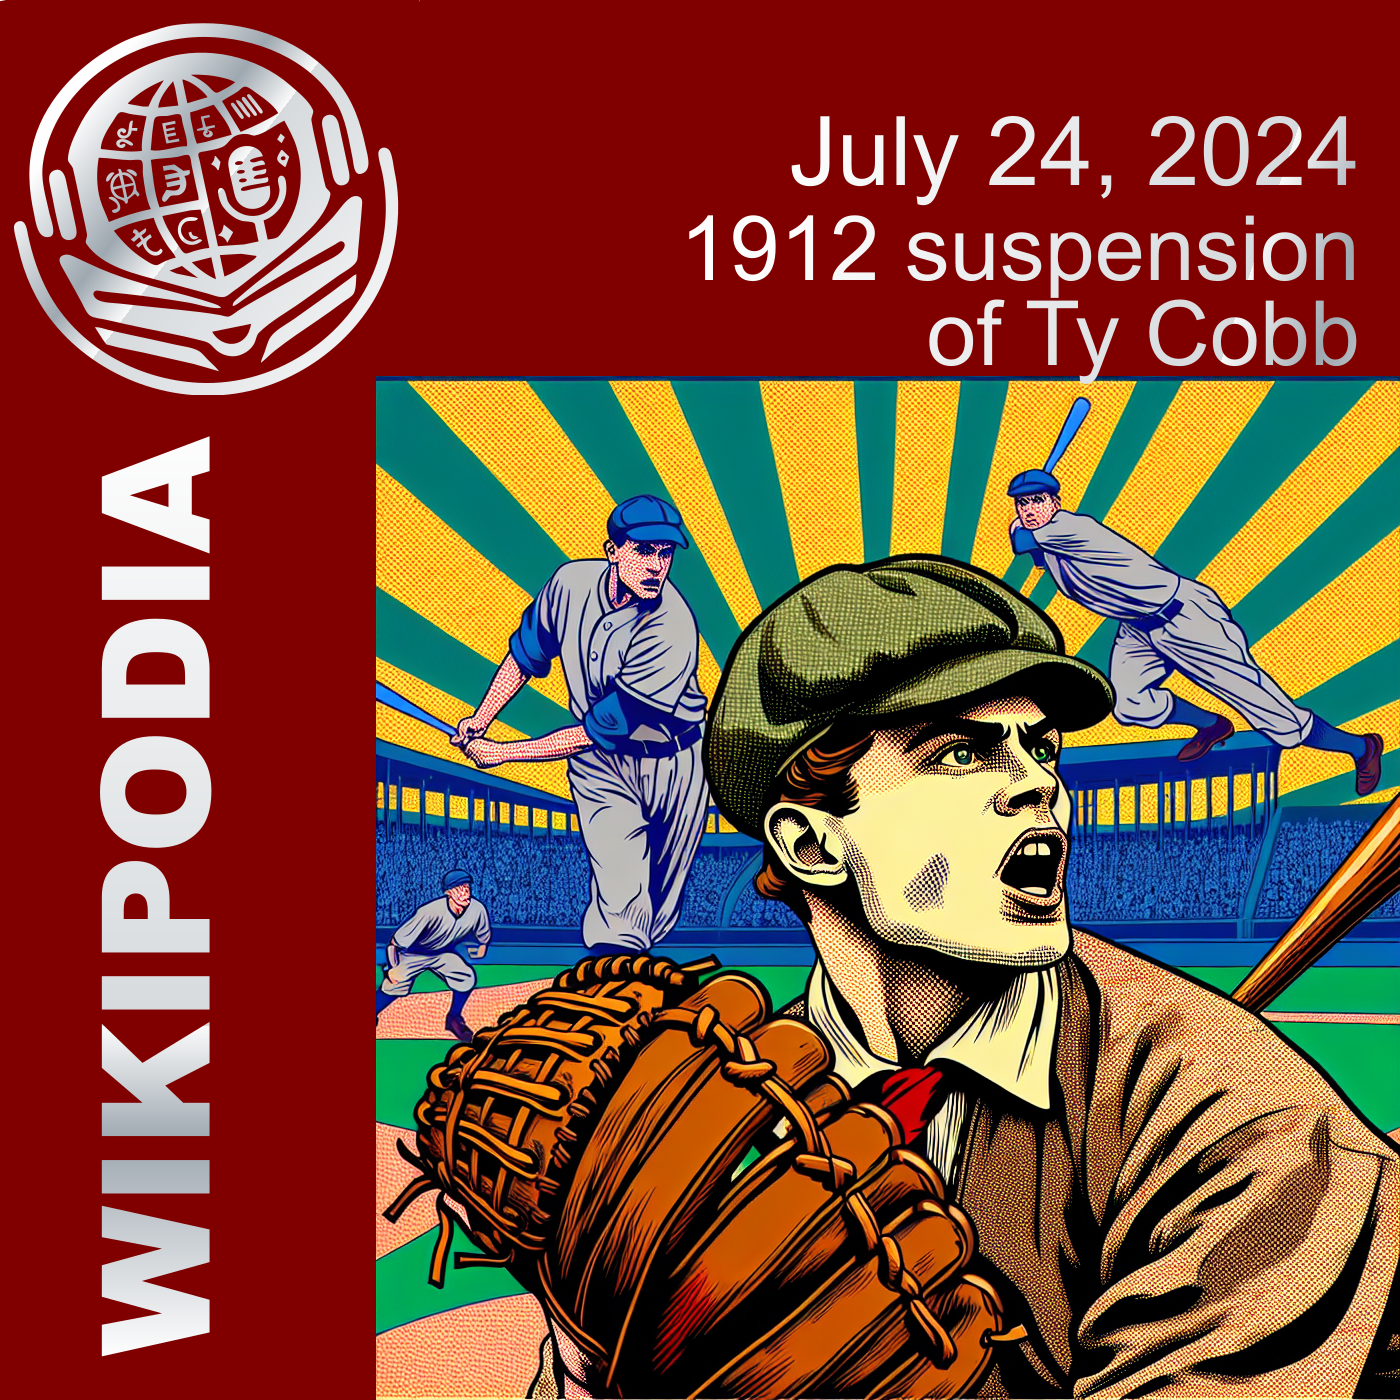 1912 suspension of Ty Cobb